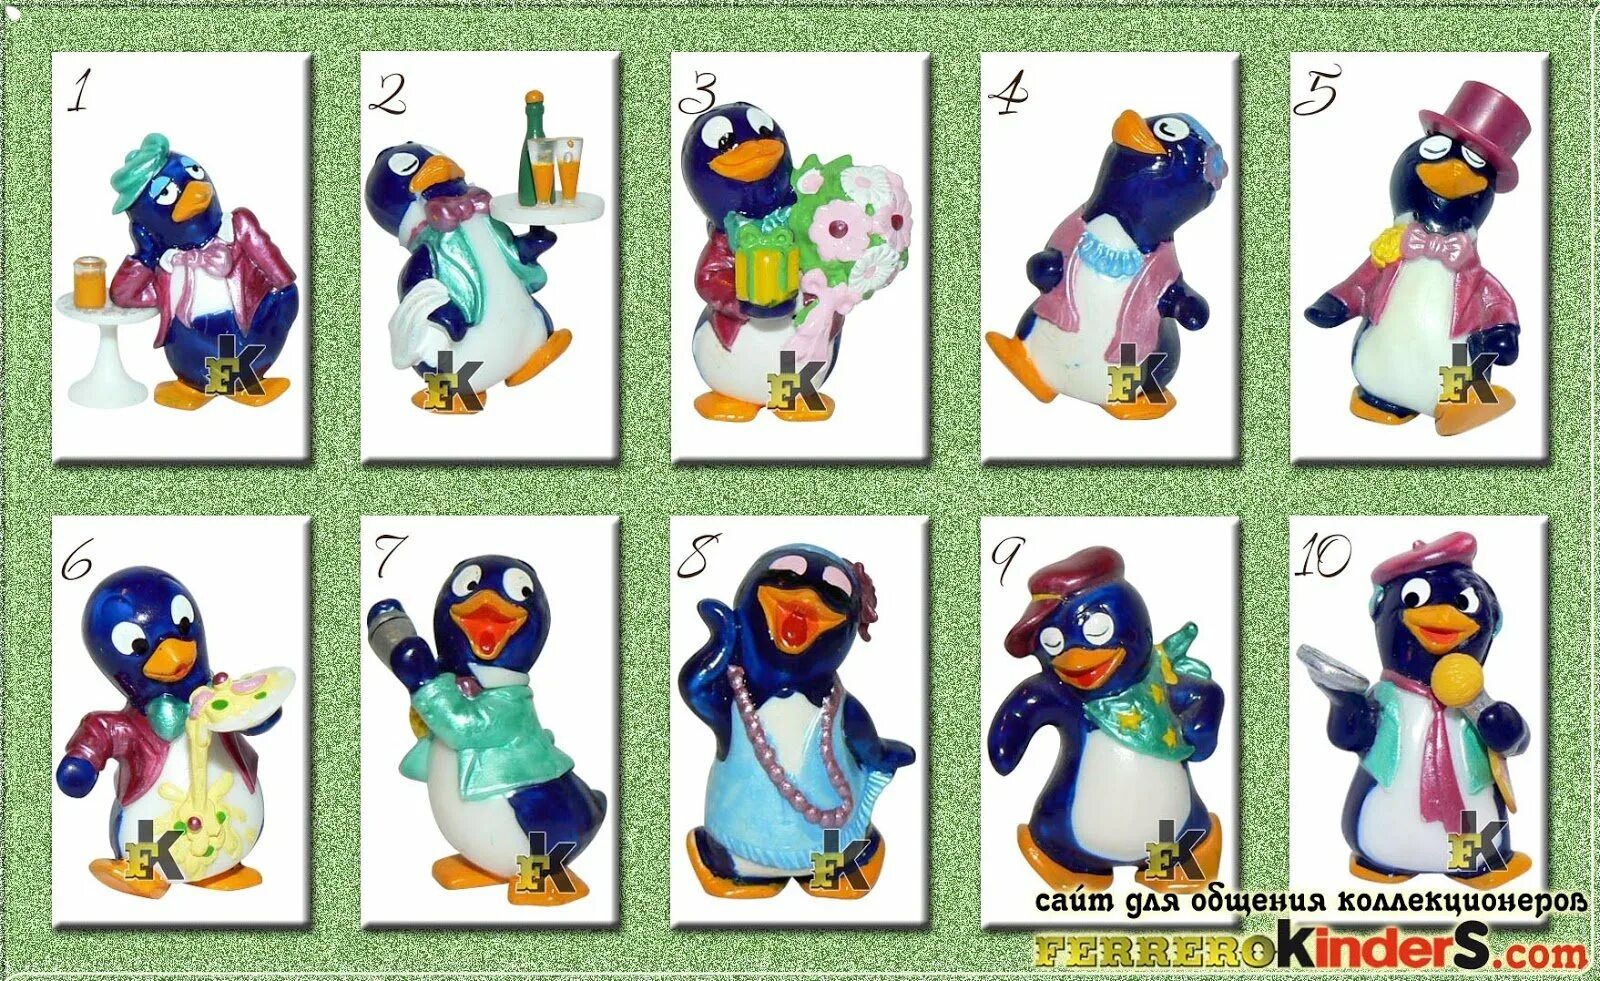 Коллекция пингвинов из Киндер сюрприза. Коллекция Киндер пингвины 1994. Киндер сюрприз коллекция пингвинов. Киндер коллекции 90-х пингвины. Киндер игрушки пингвины